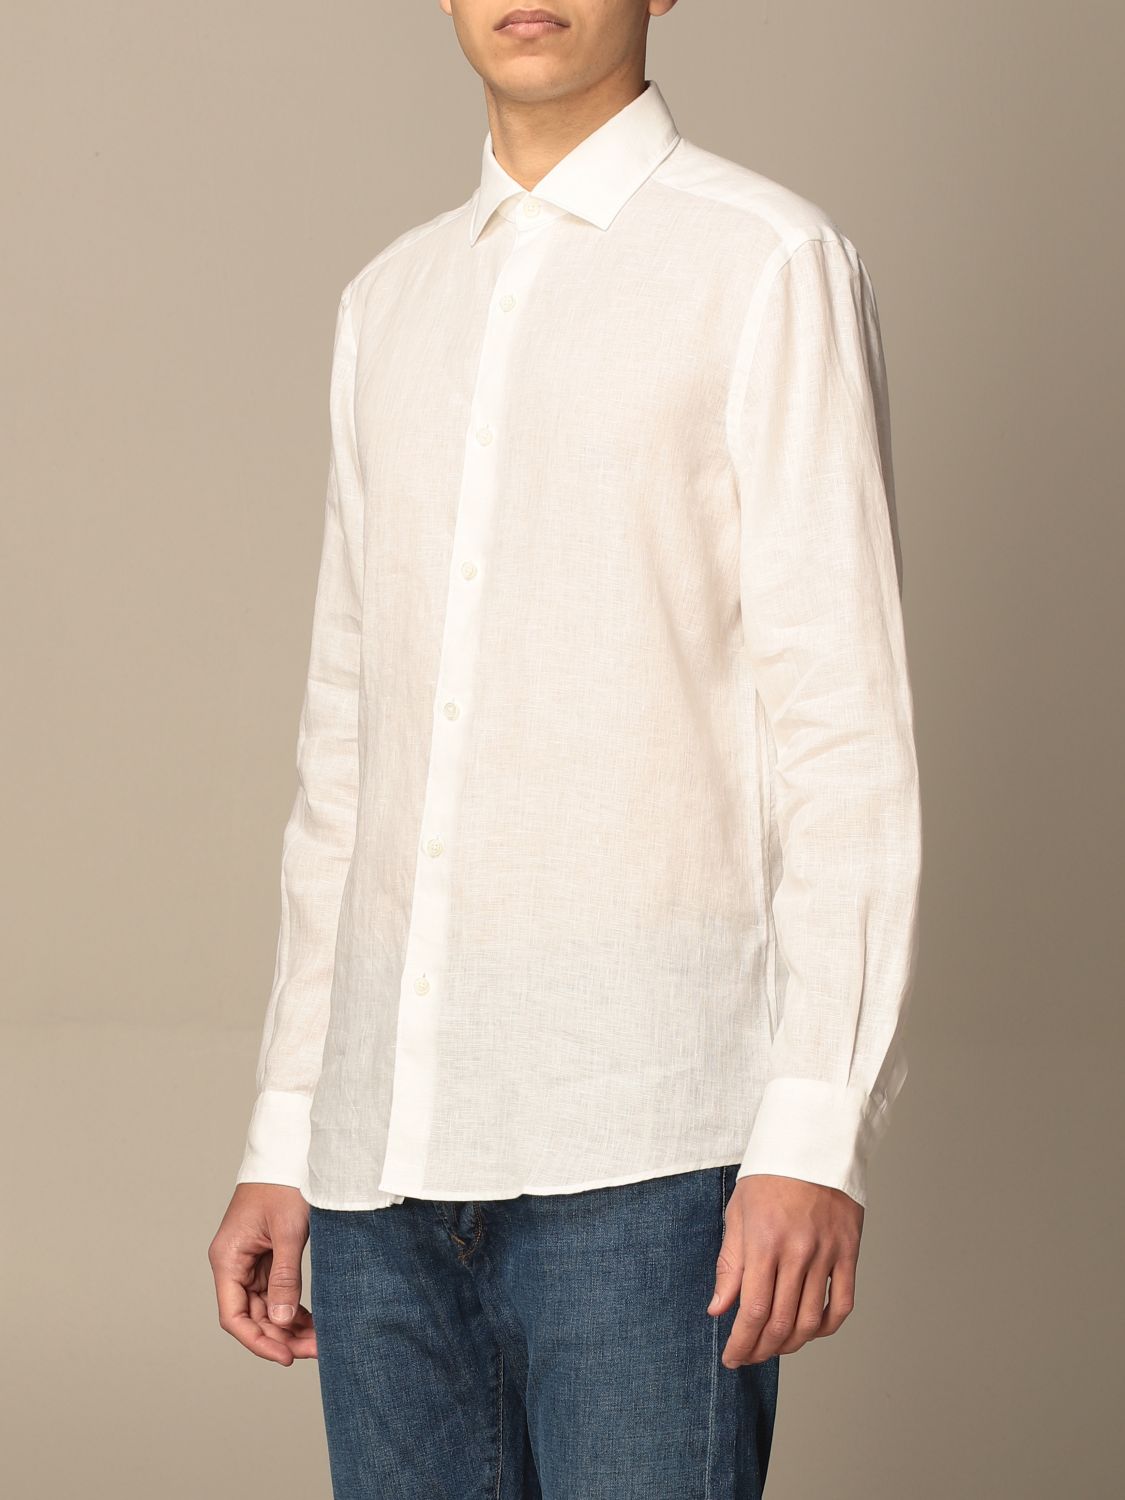 ERMENEGILDO ZEGNA: linen shirt | Shirt Ermenegildo Zegna Men White ...